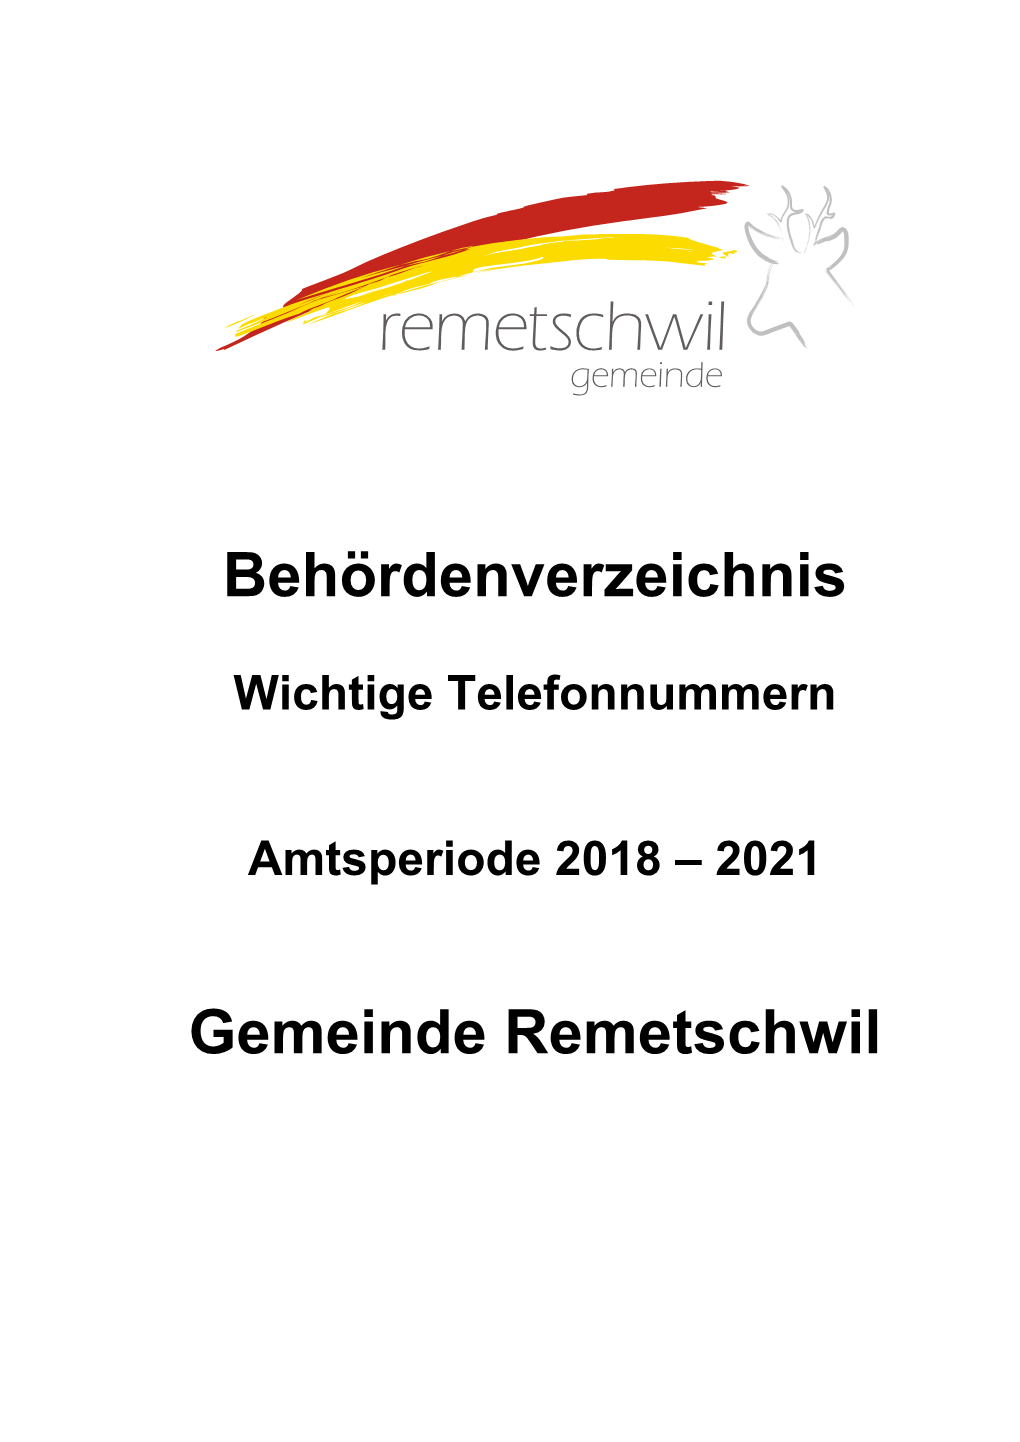 Behördenverzeichnis 2018/2021